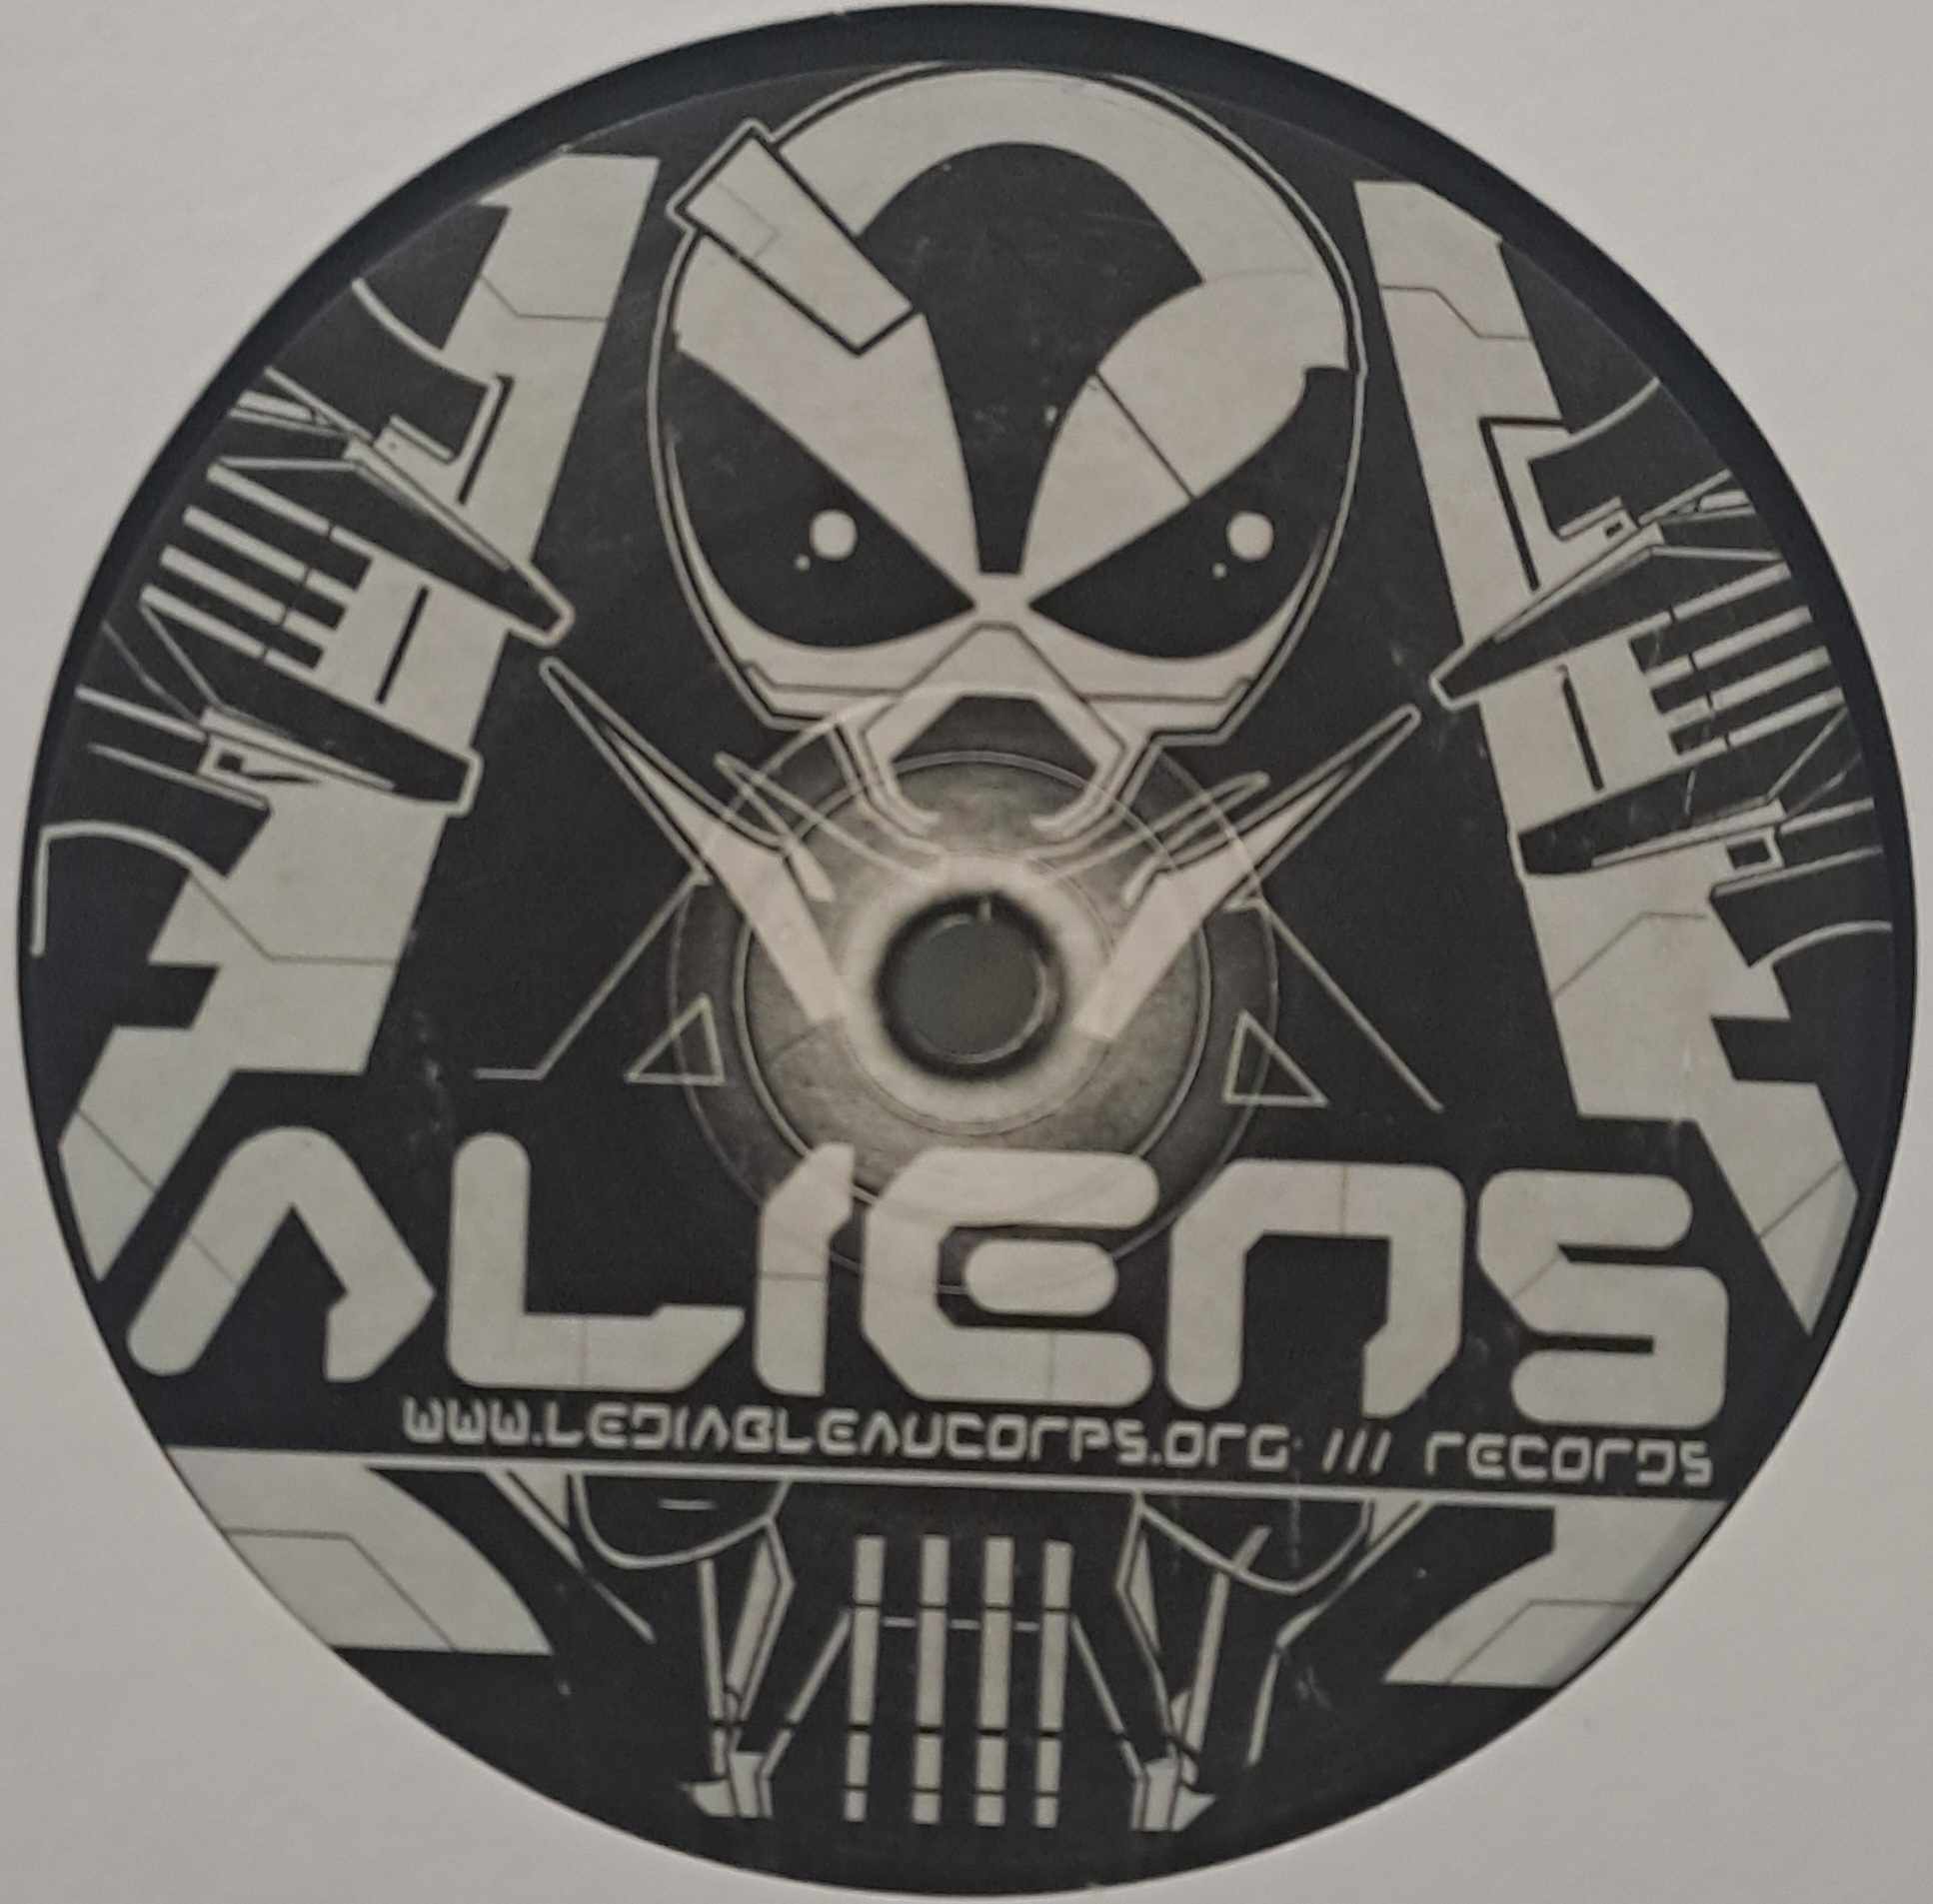 Aliens 01 (original) - vinyle freetekno